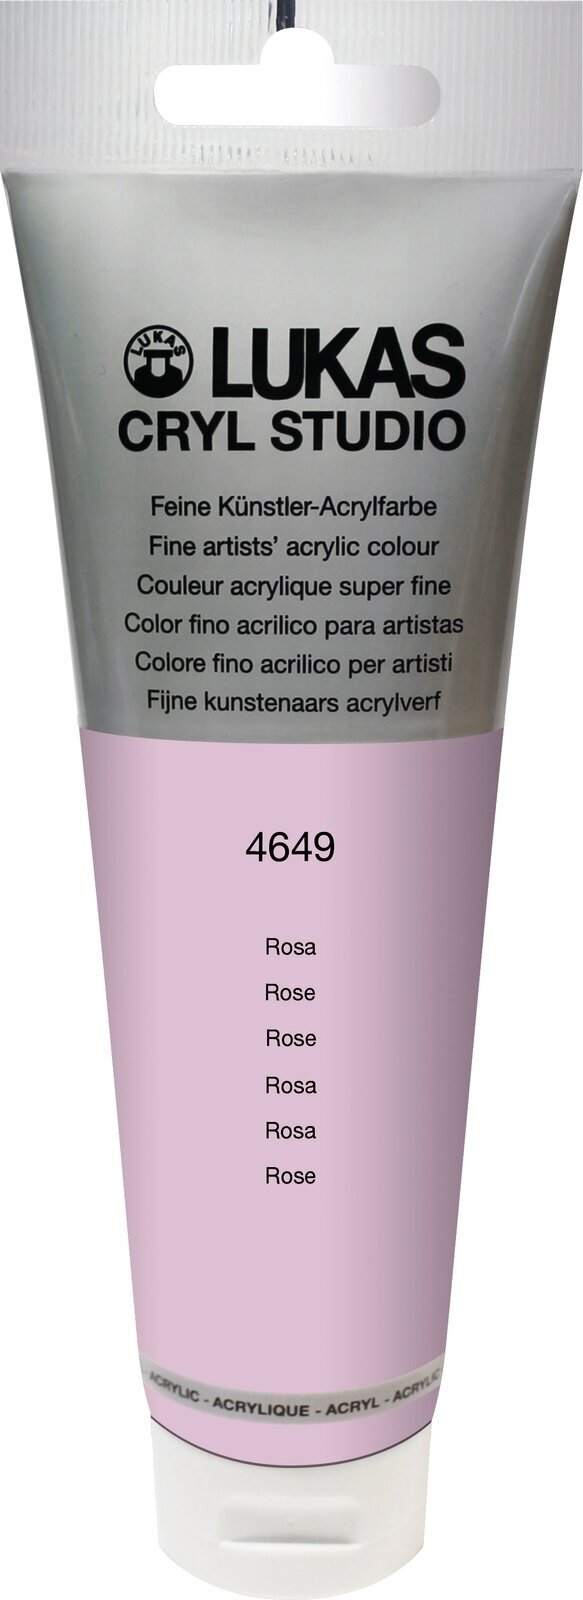 Tinta acrílica Lukas Cryl Studio Acrylic Paint Plastic Tube Tinta acrílica Rose 125 ml 1 un.